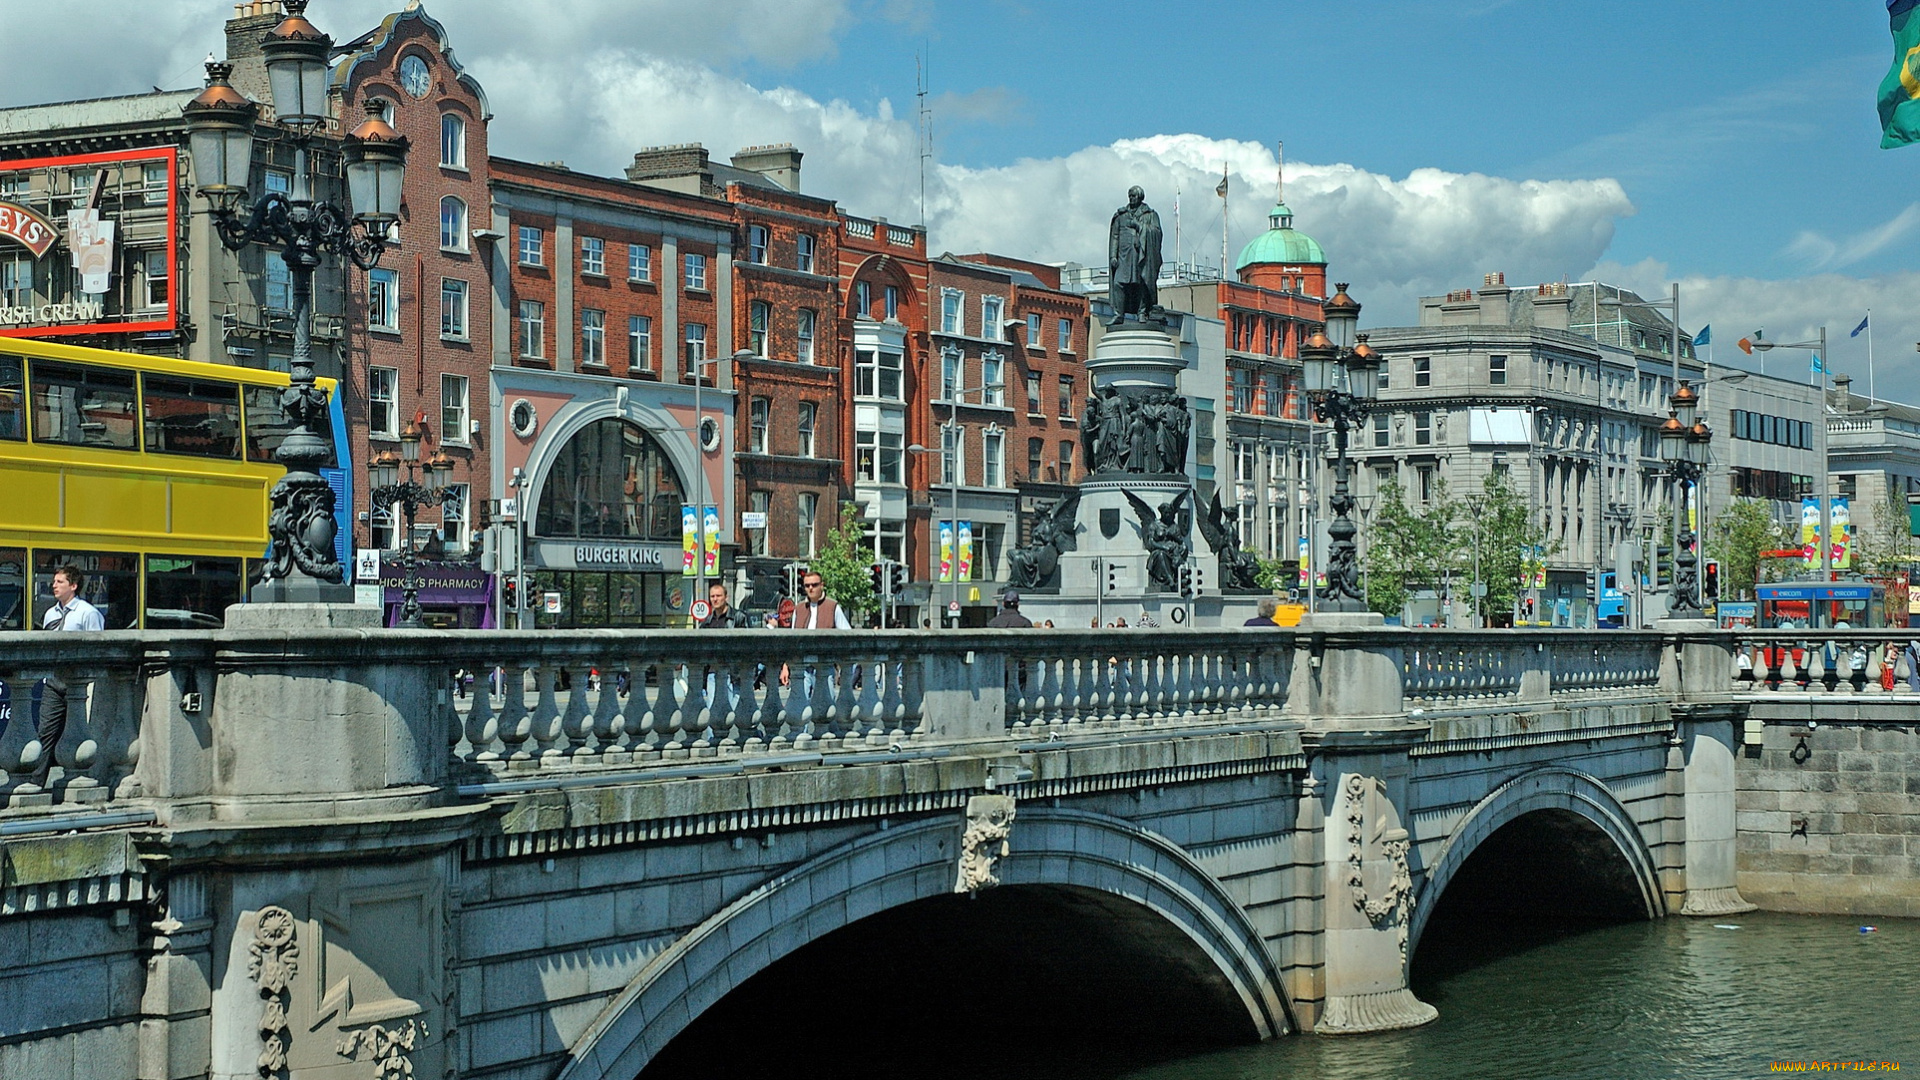 города, столицы, государств, река, мост, фонари, памятник, дома, дублин, ирландия